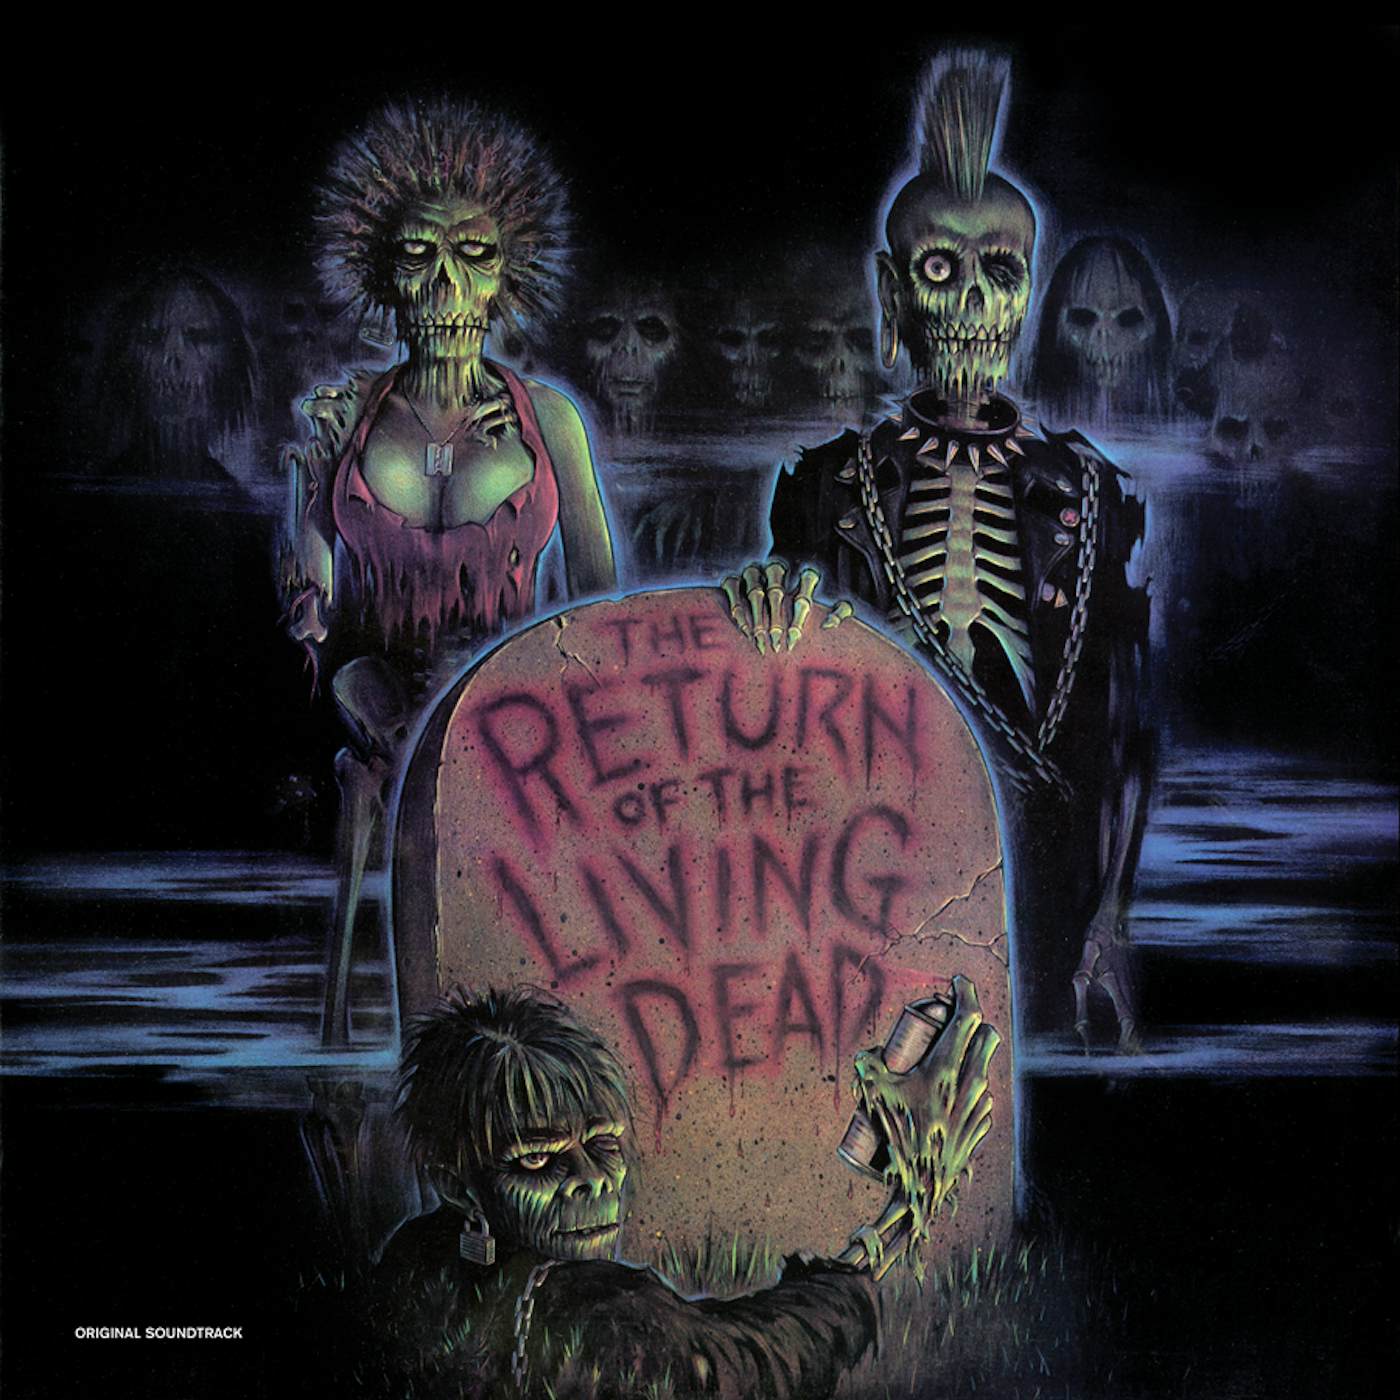 RETURN OF THE LIVING DEAD / O.S.T. Vinyl Record